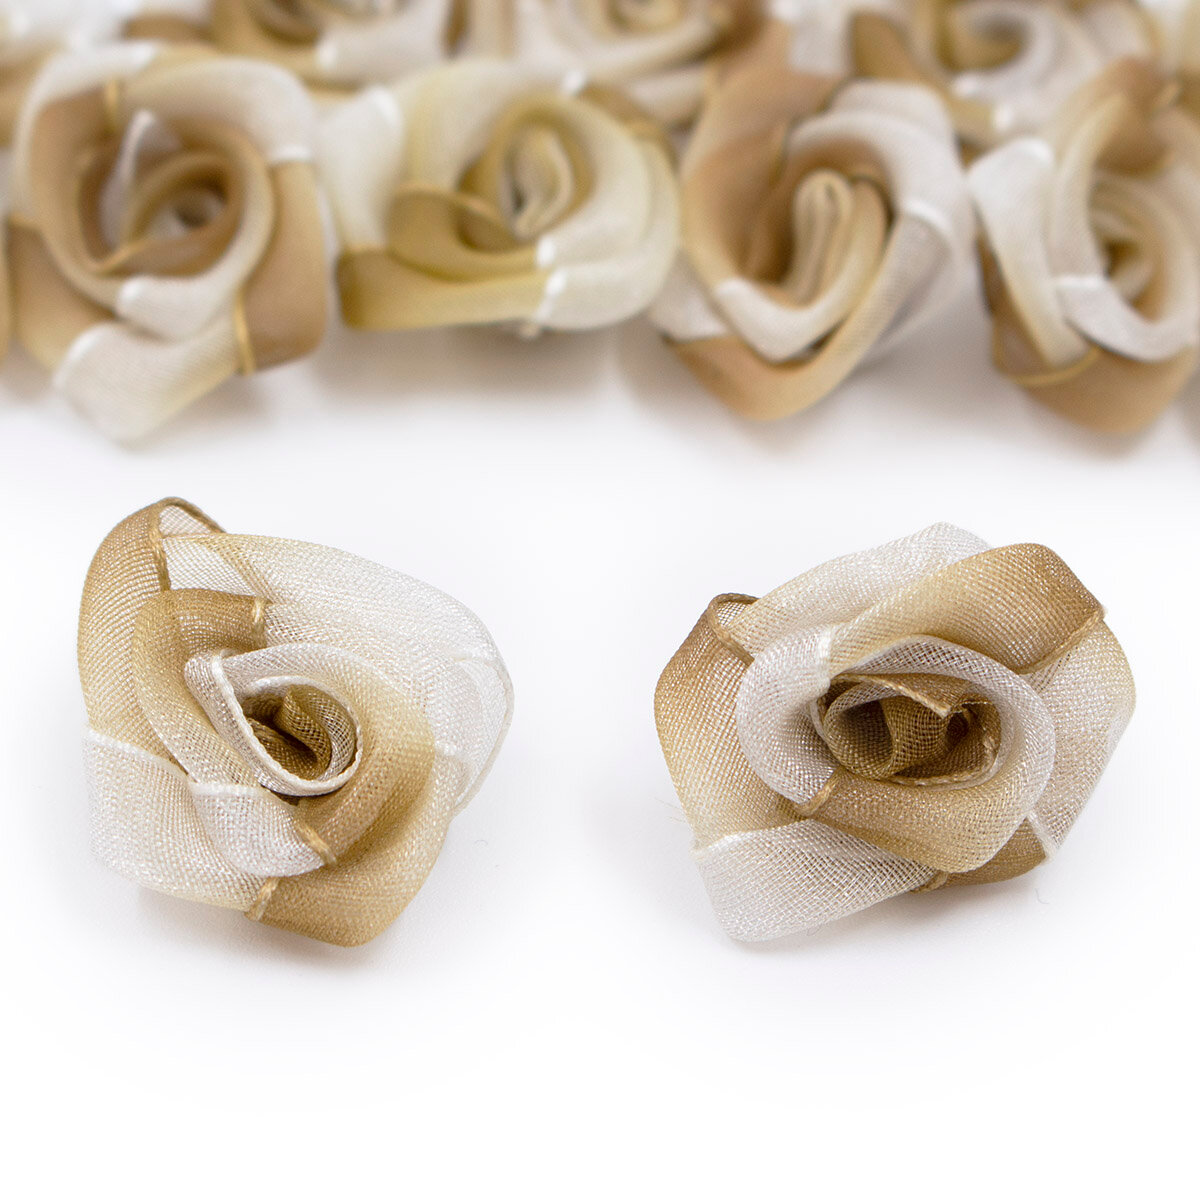 Цветок пришивной органза 'Роза' 2,5 см (бежевый)